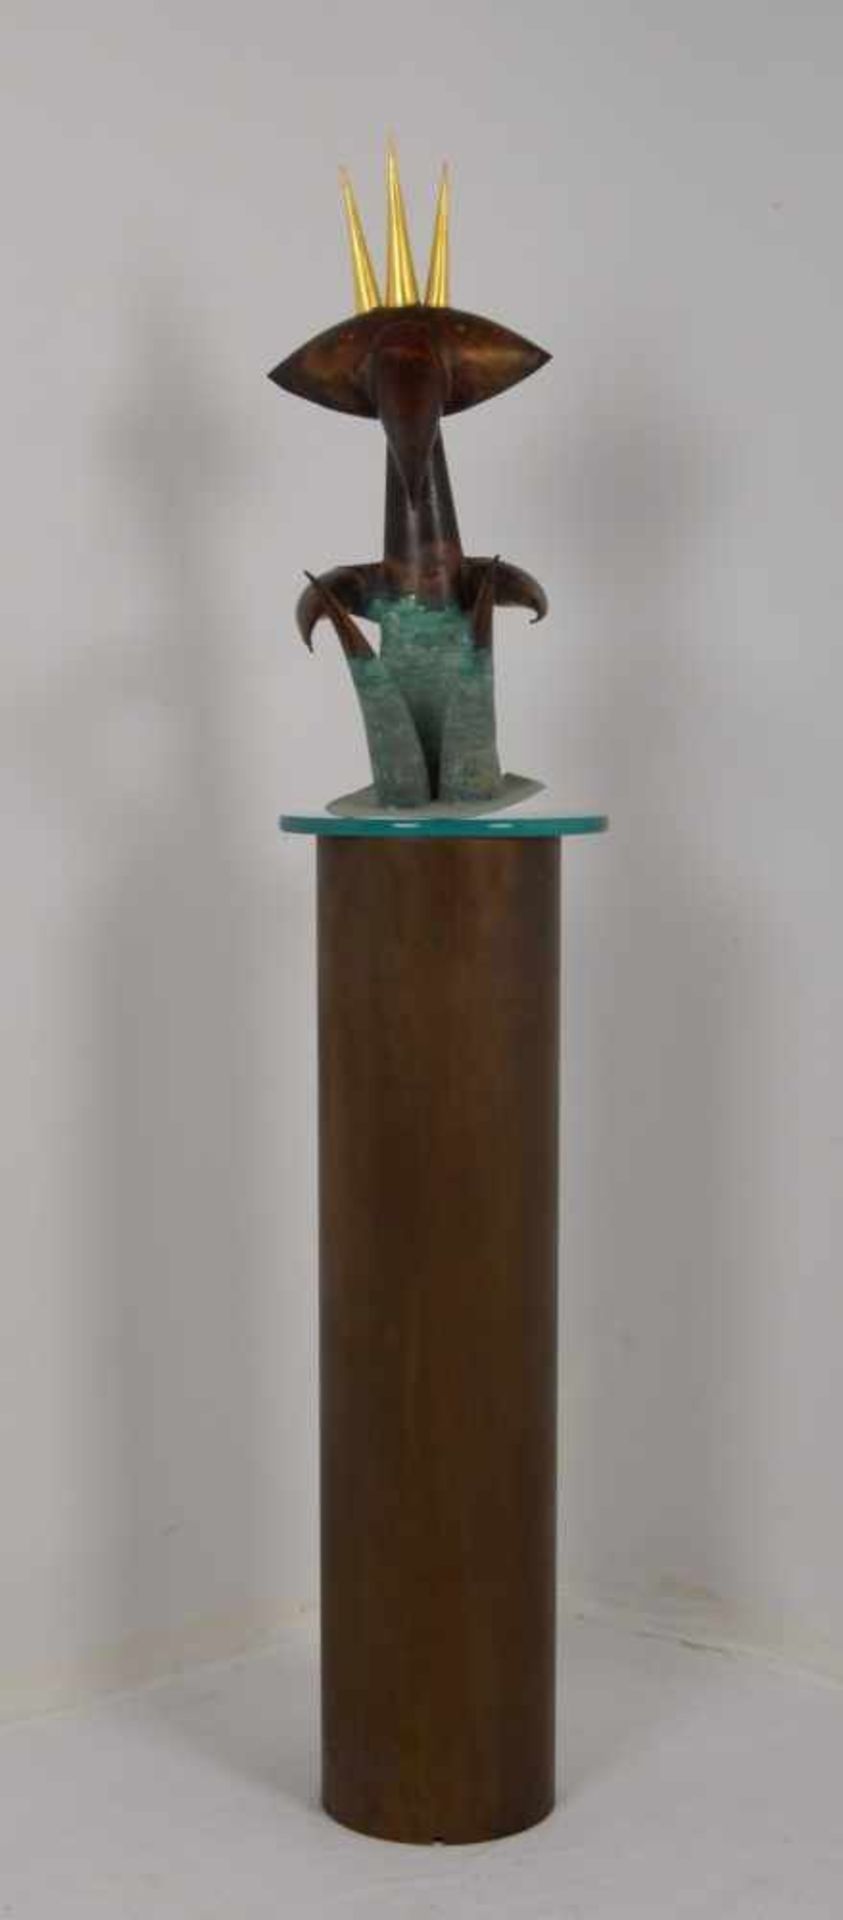 Ose, Reinhard, Kunstobjekt/Zimmerbrunnen (in Handarbeit gefertigt), 'Der kleine König', schwere